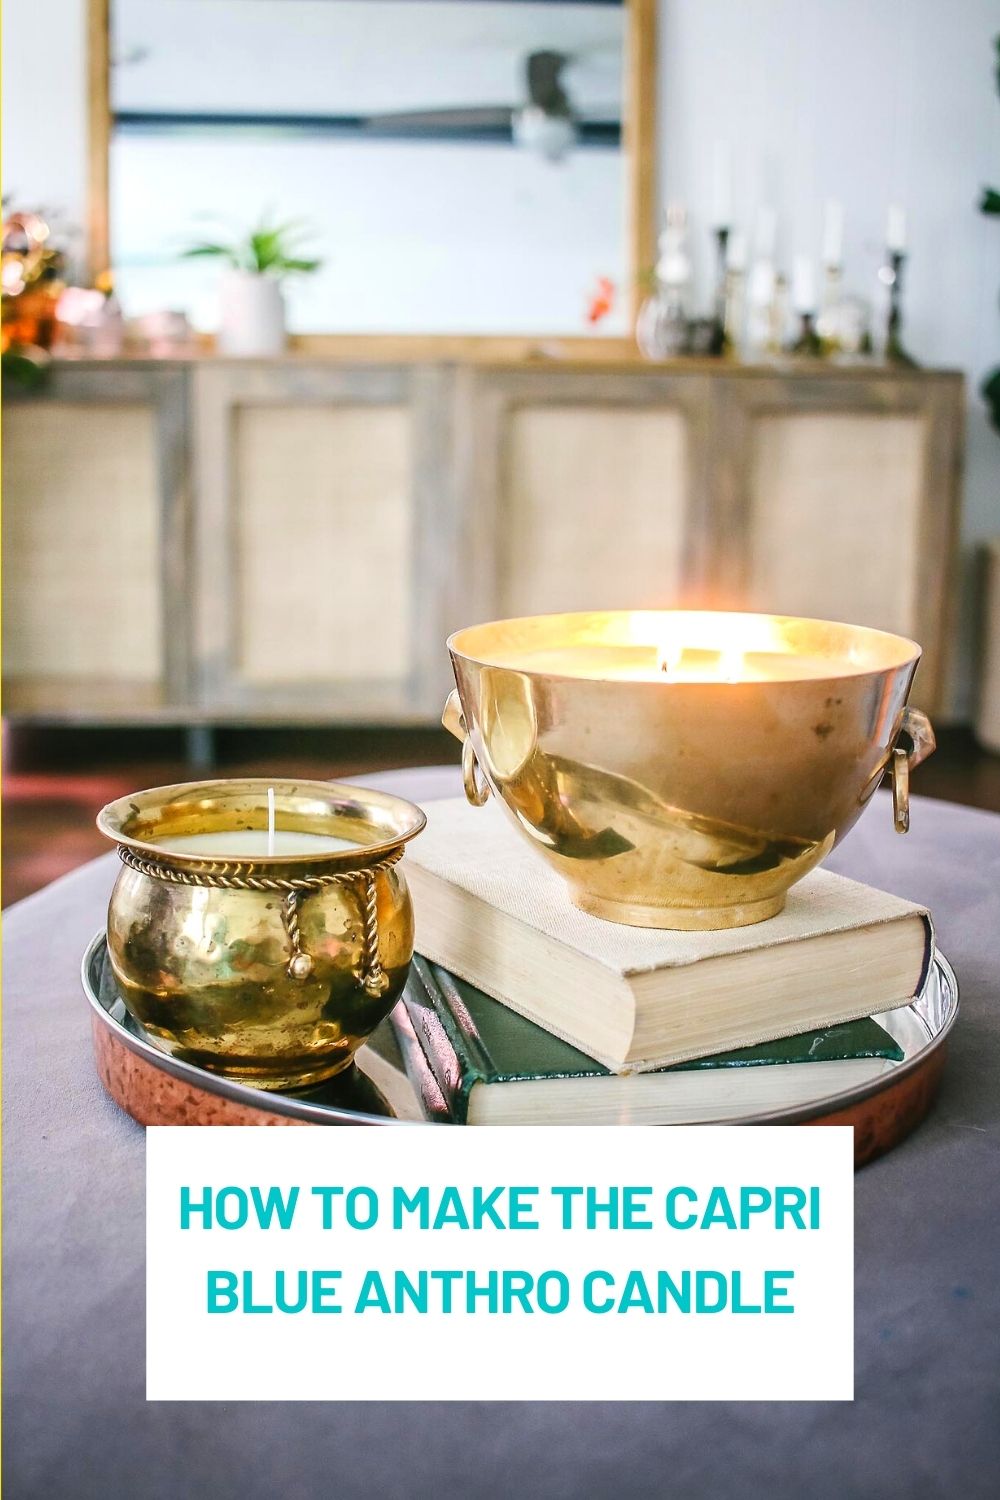 Easy DIY Natural Room Spray recipe for Anthro Capri Blue Volcano